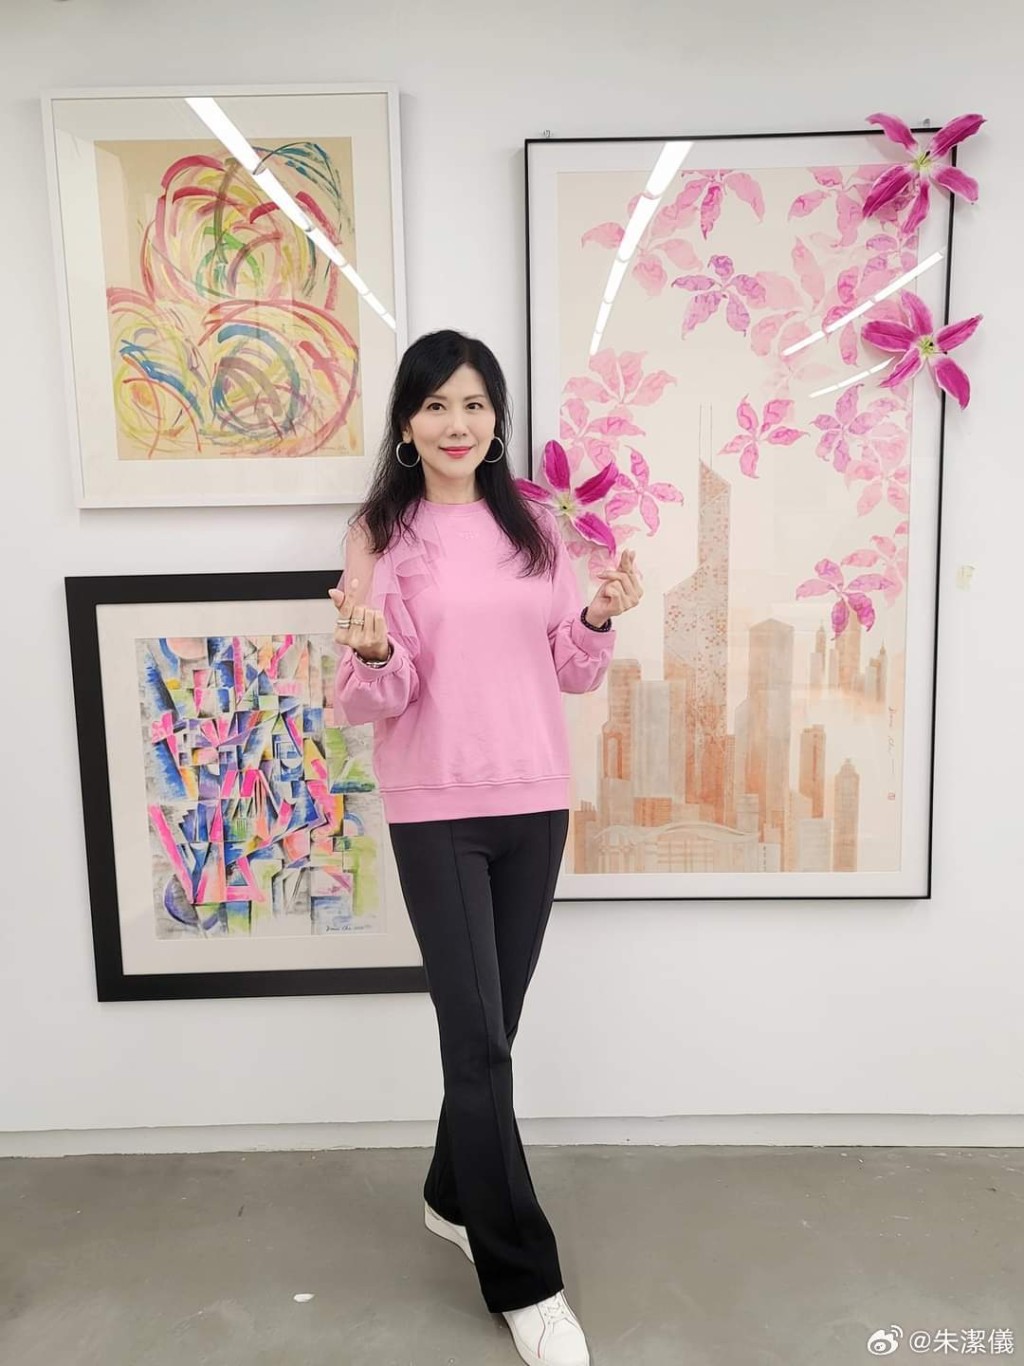 香港视觉艺术中心的展览也有朱洁仪的作品。